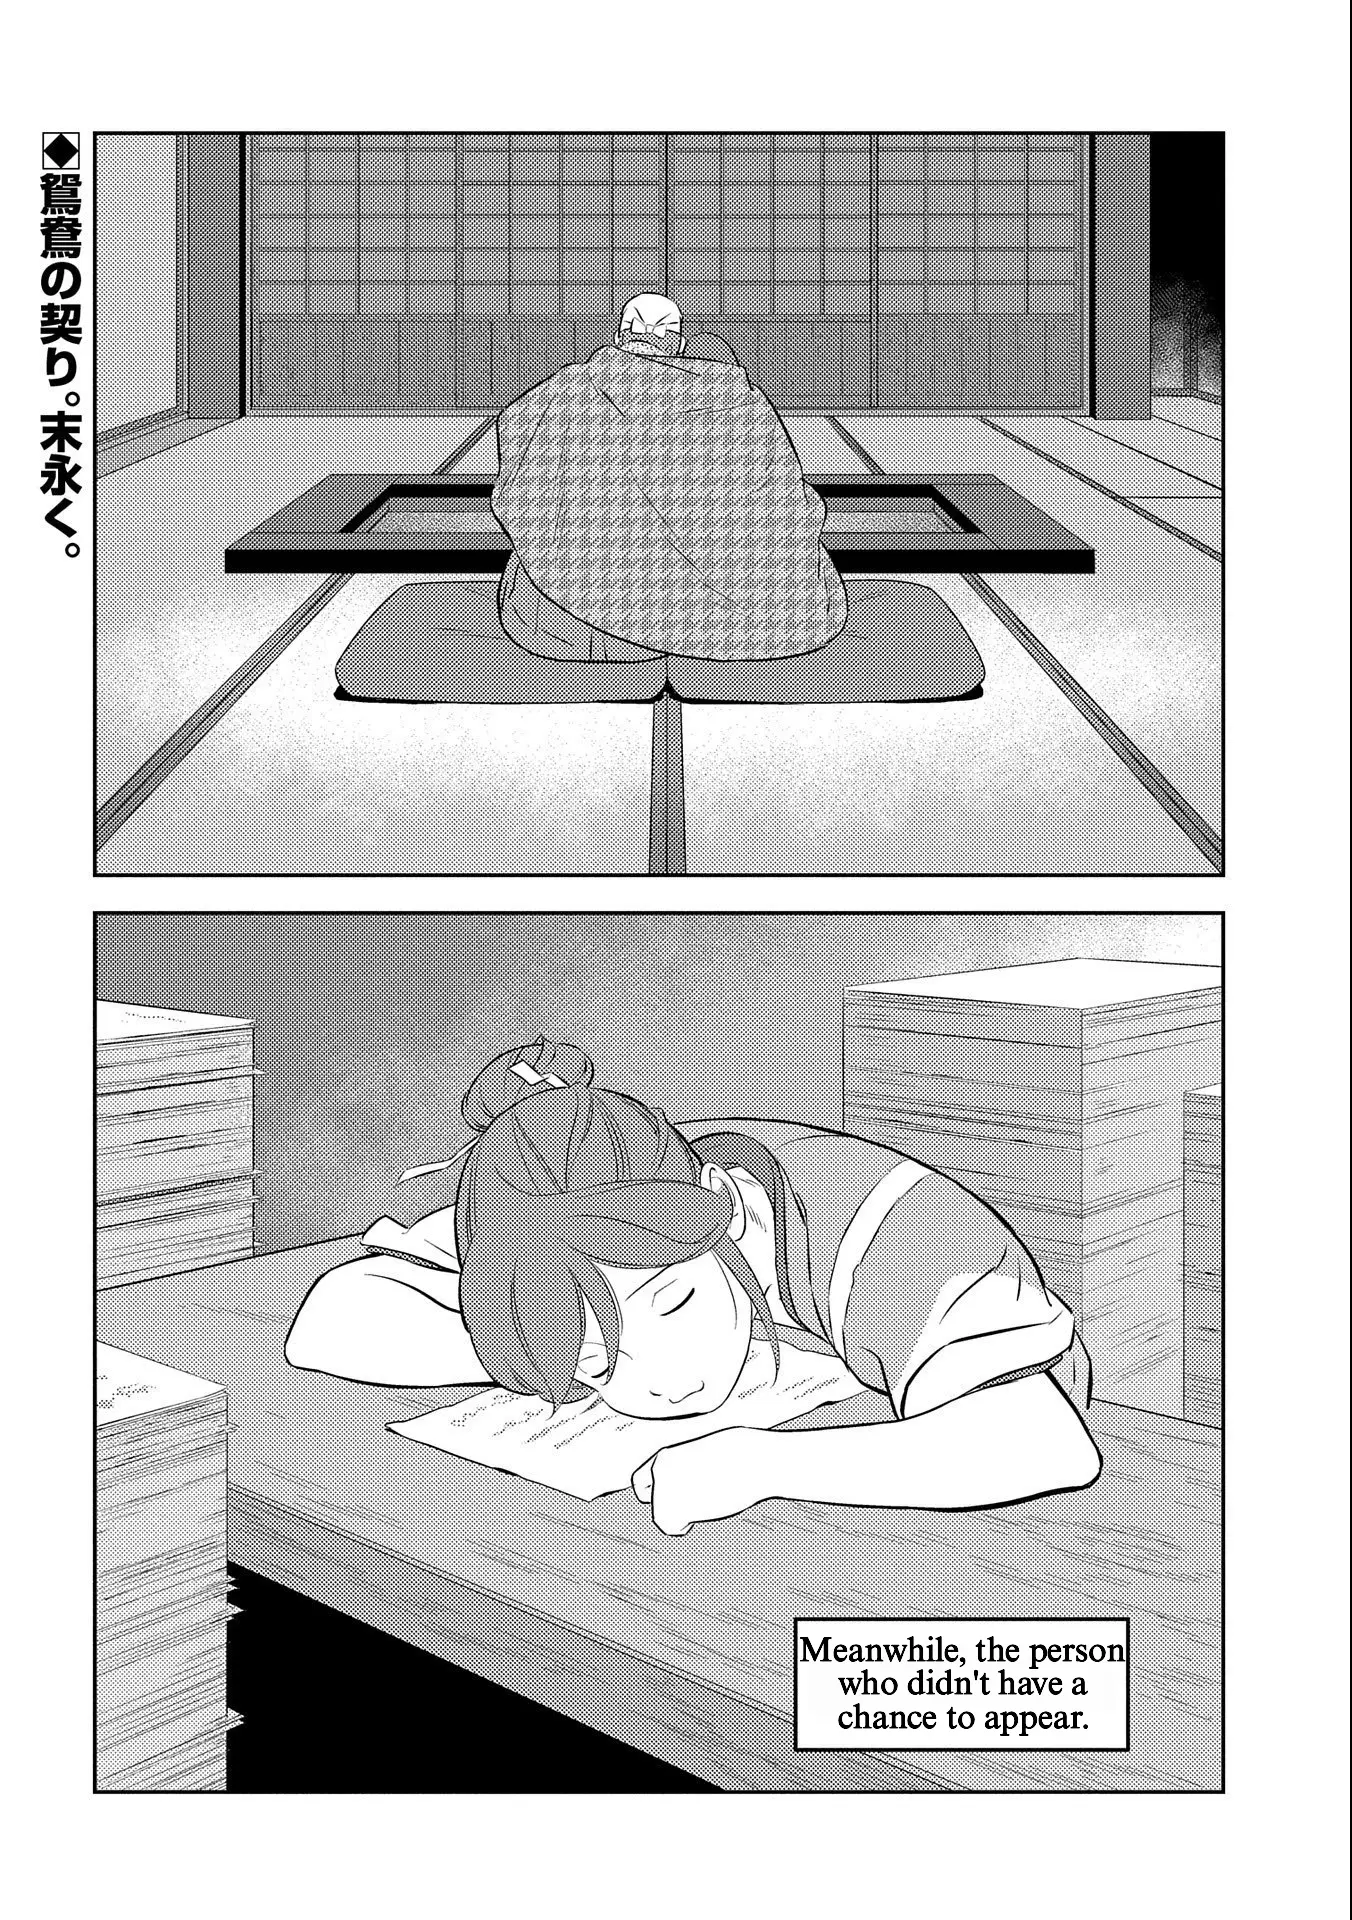 Sengoku Komachi Kuroutan: Noukou Giga - 69 page 30-4669dc5c